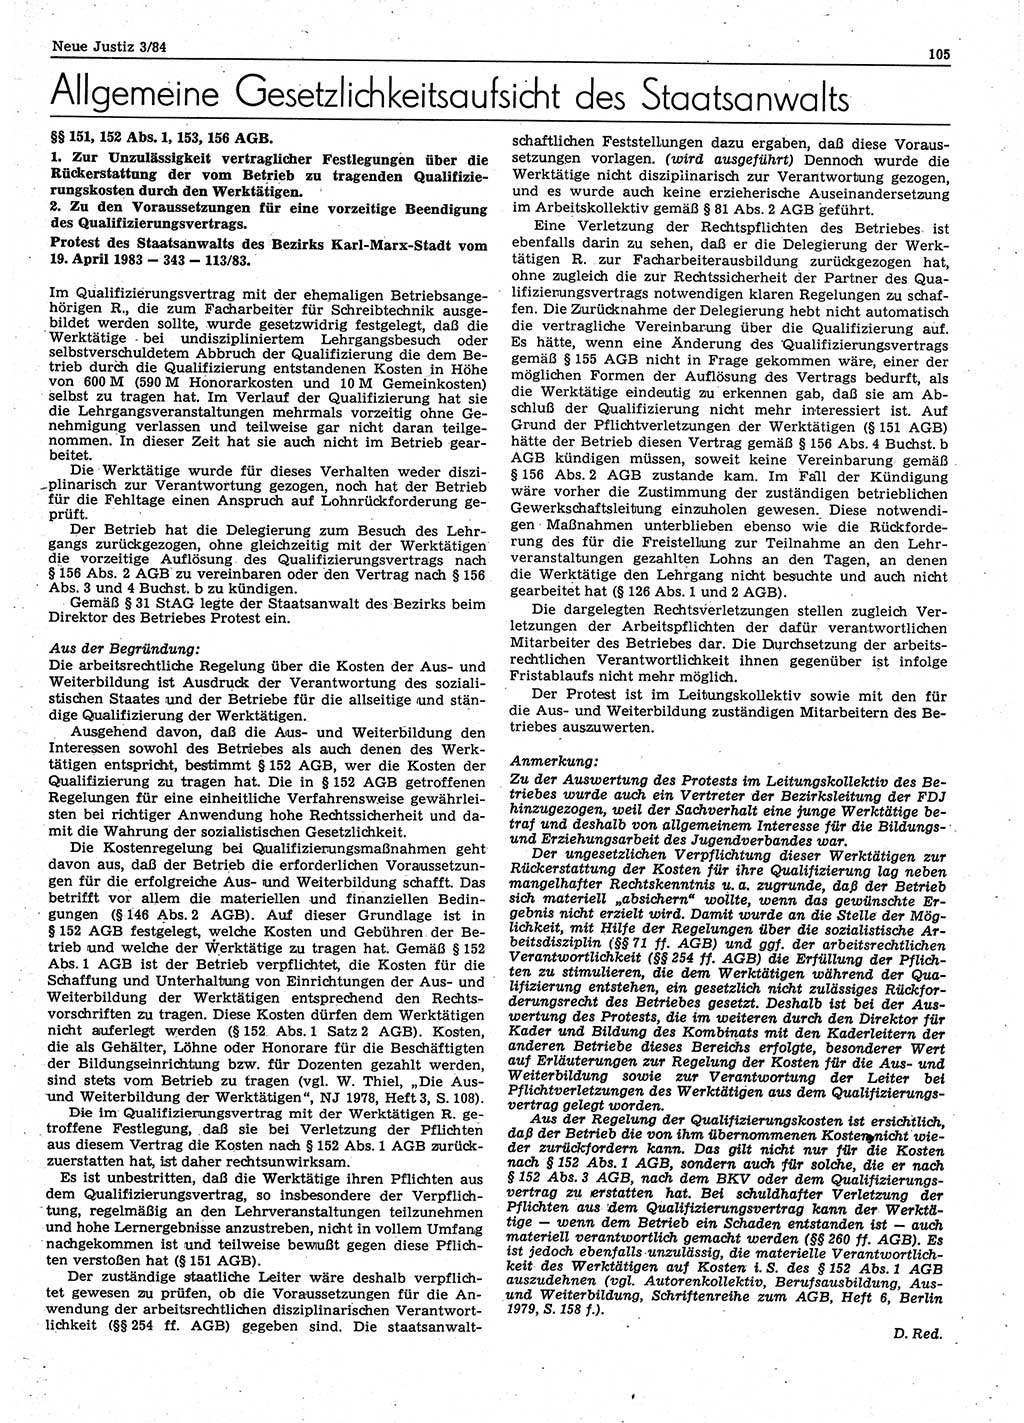 Neue Justiz (NJ), Zeitschrift für sozialistisches Recht und Gesetzlichkeit [Deutsche Demokratische Republik (DDR)], 38. Jahrgang 1984, Seite 105 (NJ DDR 1984, S. 105)